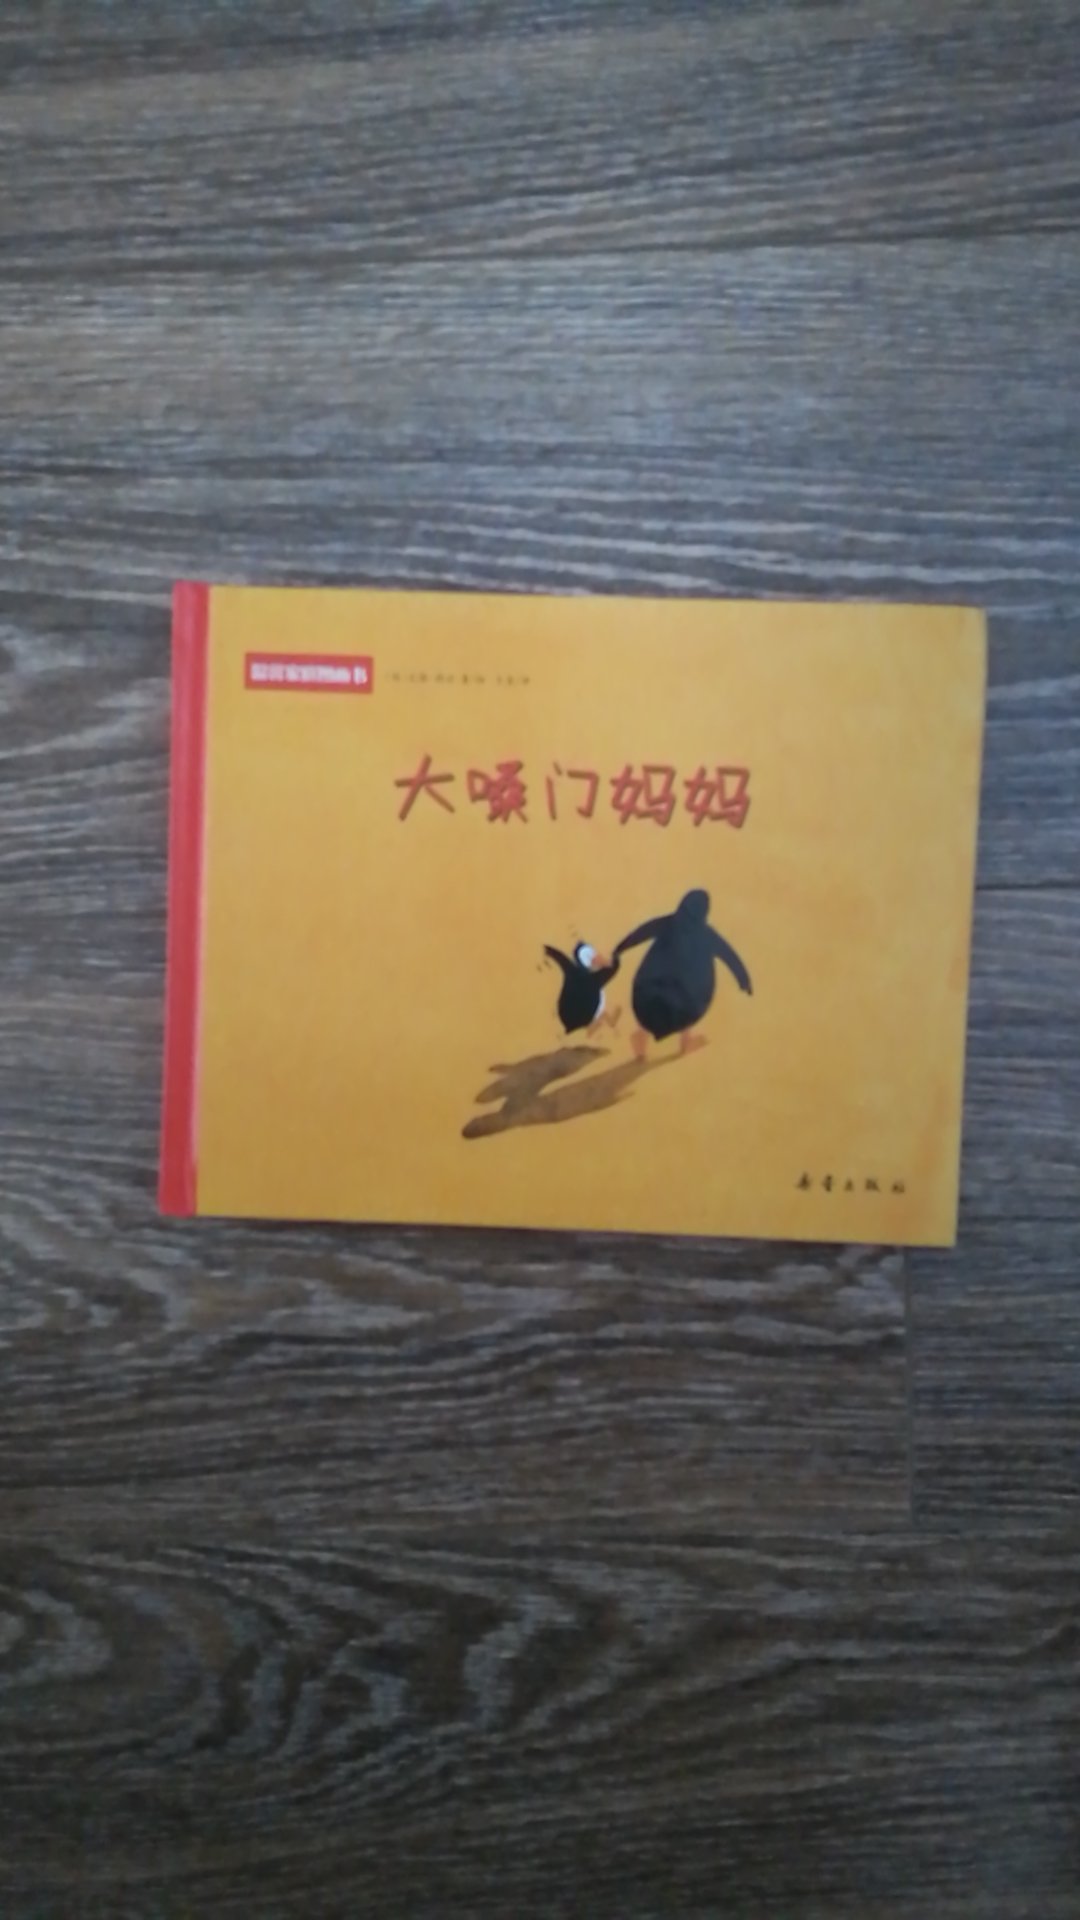 内容很简洁，但是引人深思，中国很多妈妈都喜欢大喊大叫，可以看看这本书